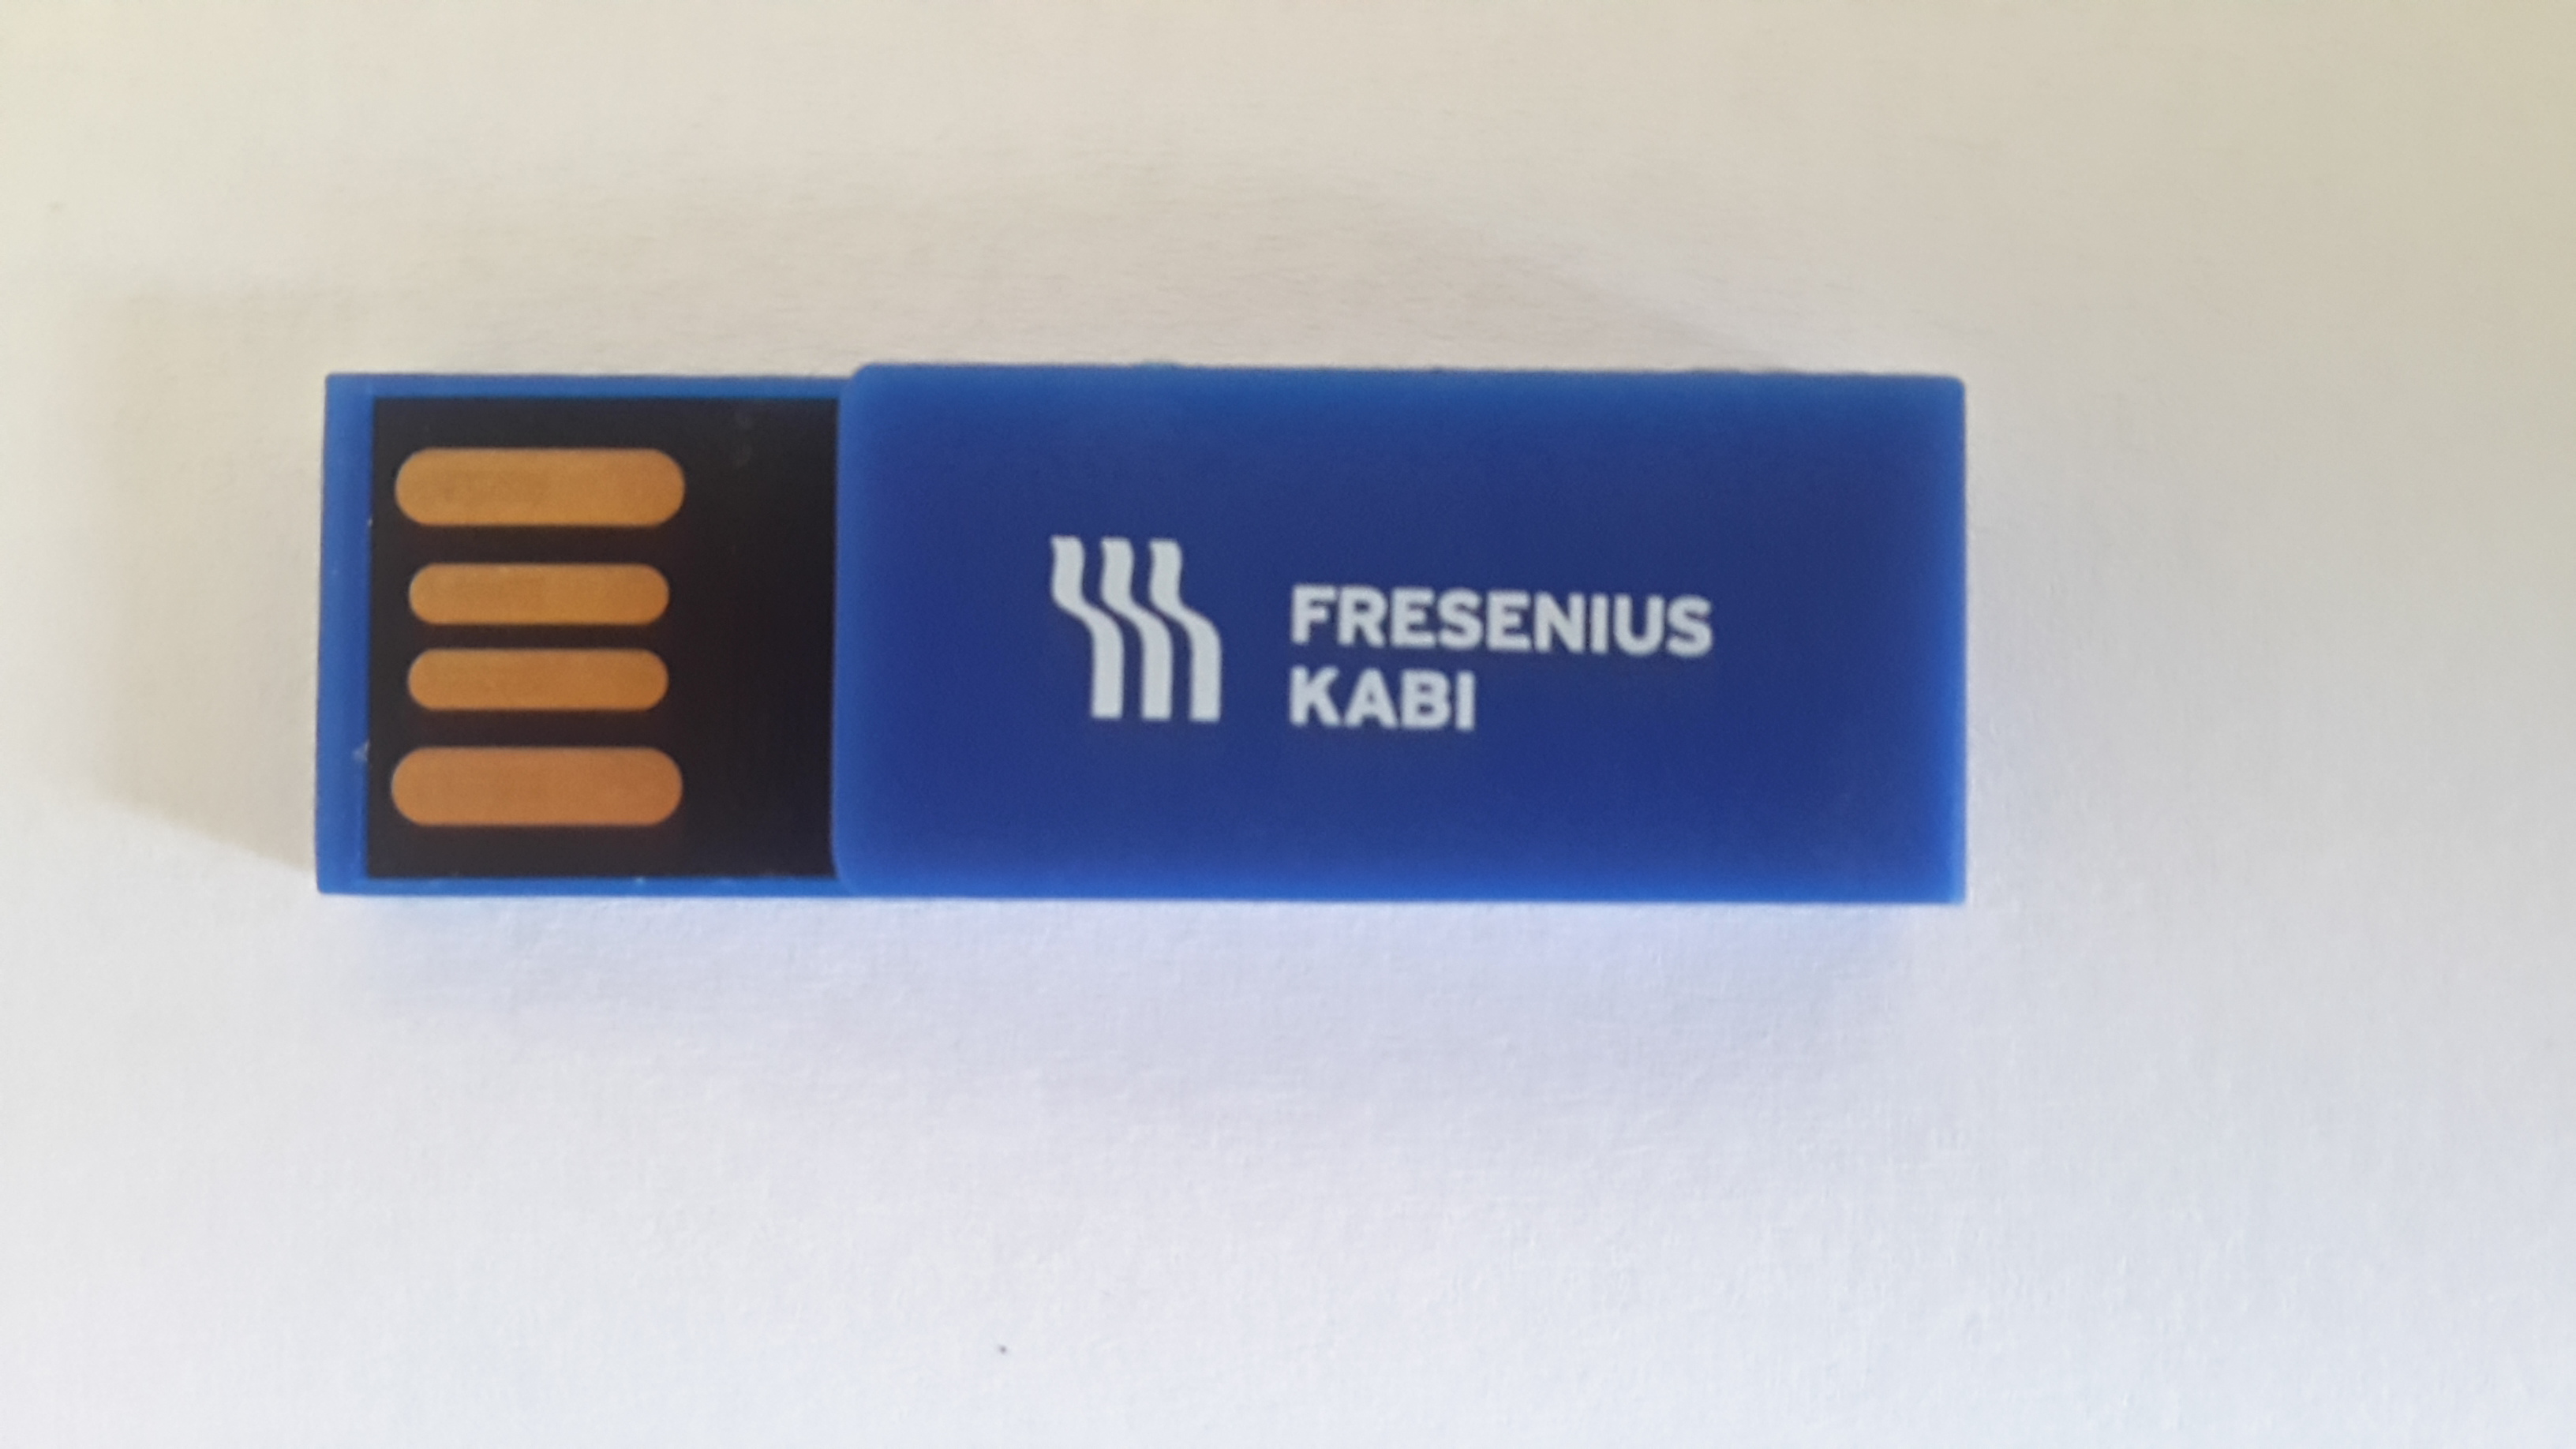 UDP Fresenius kabi